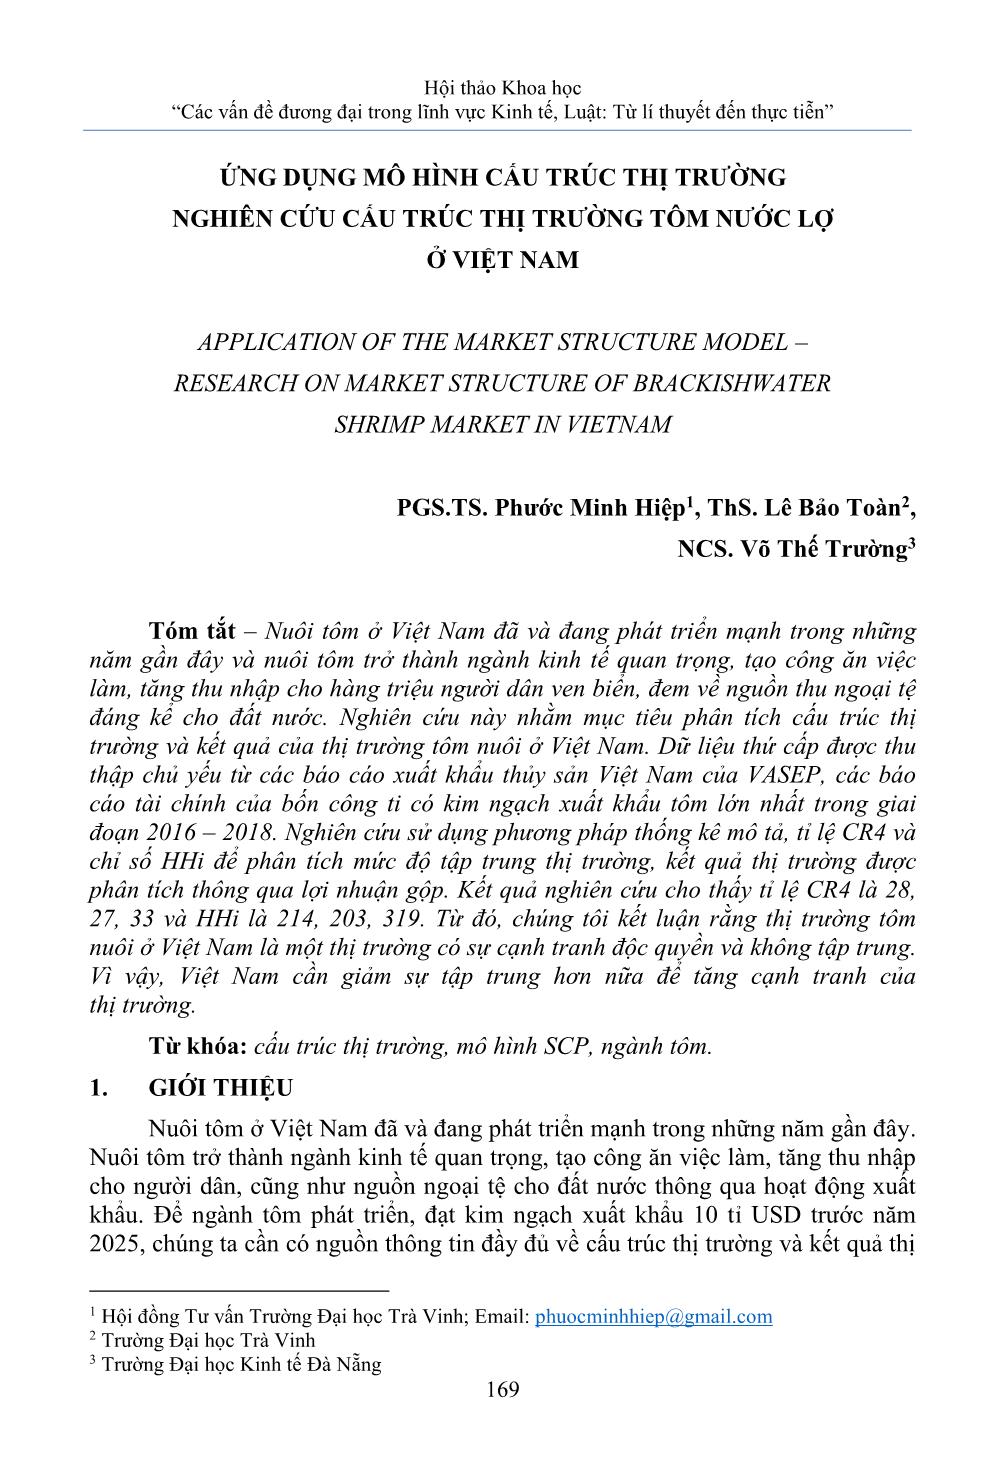 Ứng dụng mô hình cấu trúc thị trường nghiên cứu cấu trúc thị trường tôm nước lợ ở Việt Nam trang 1